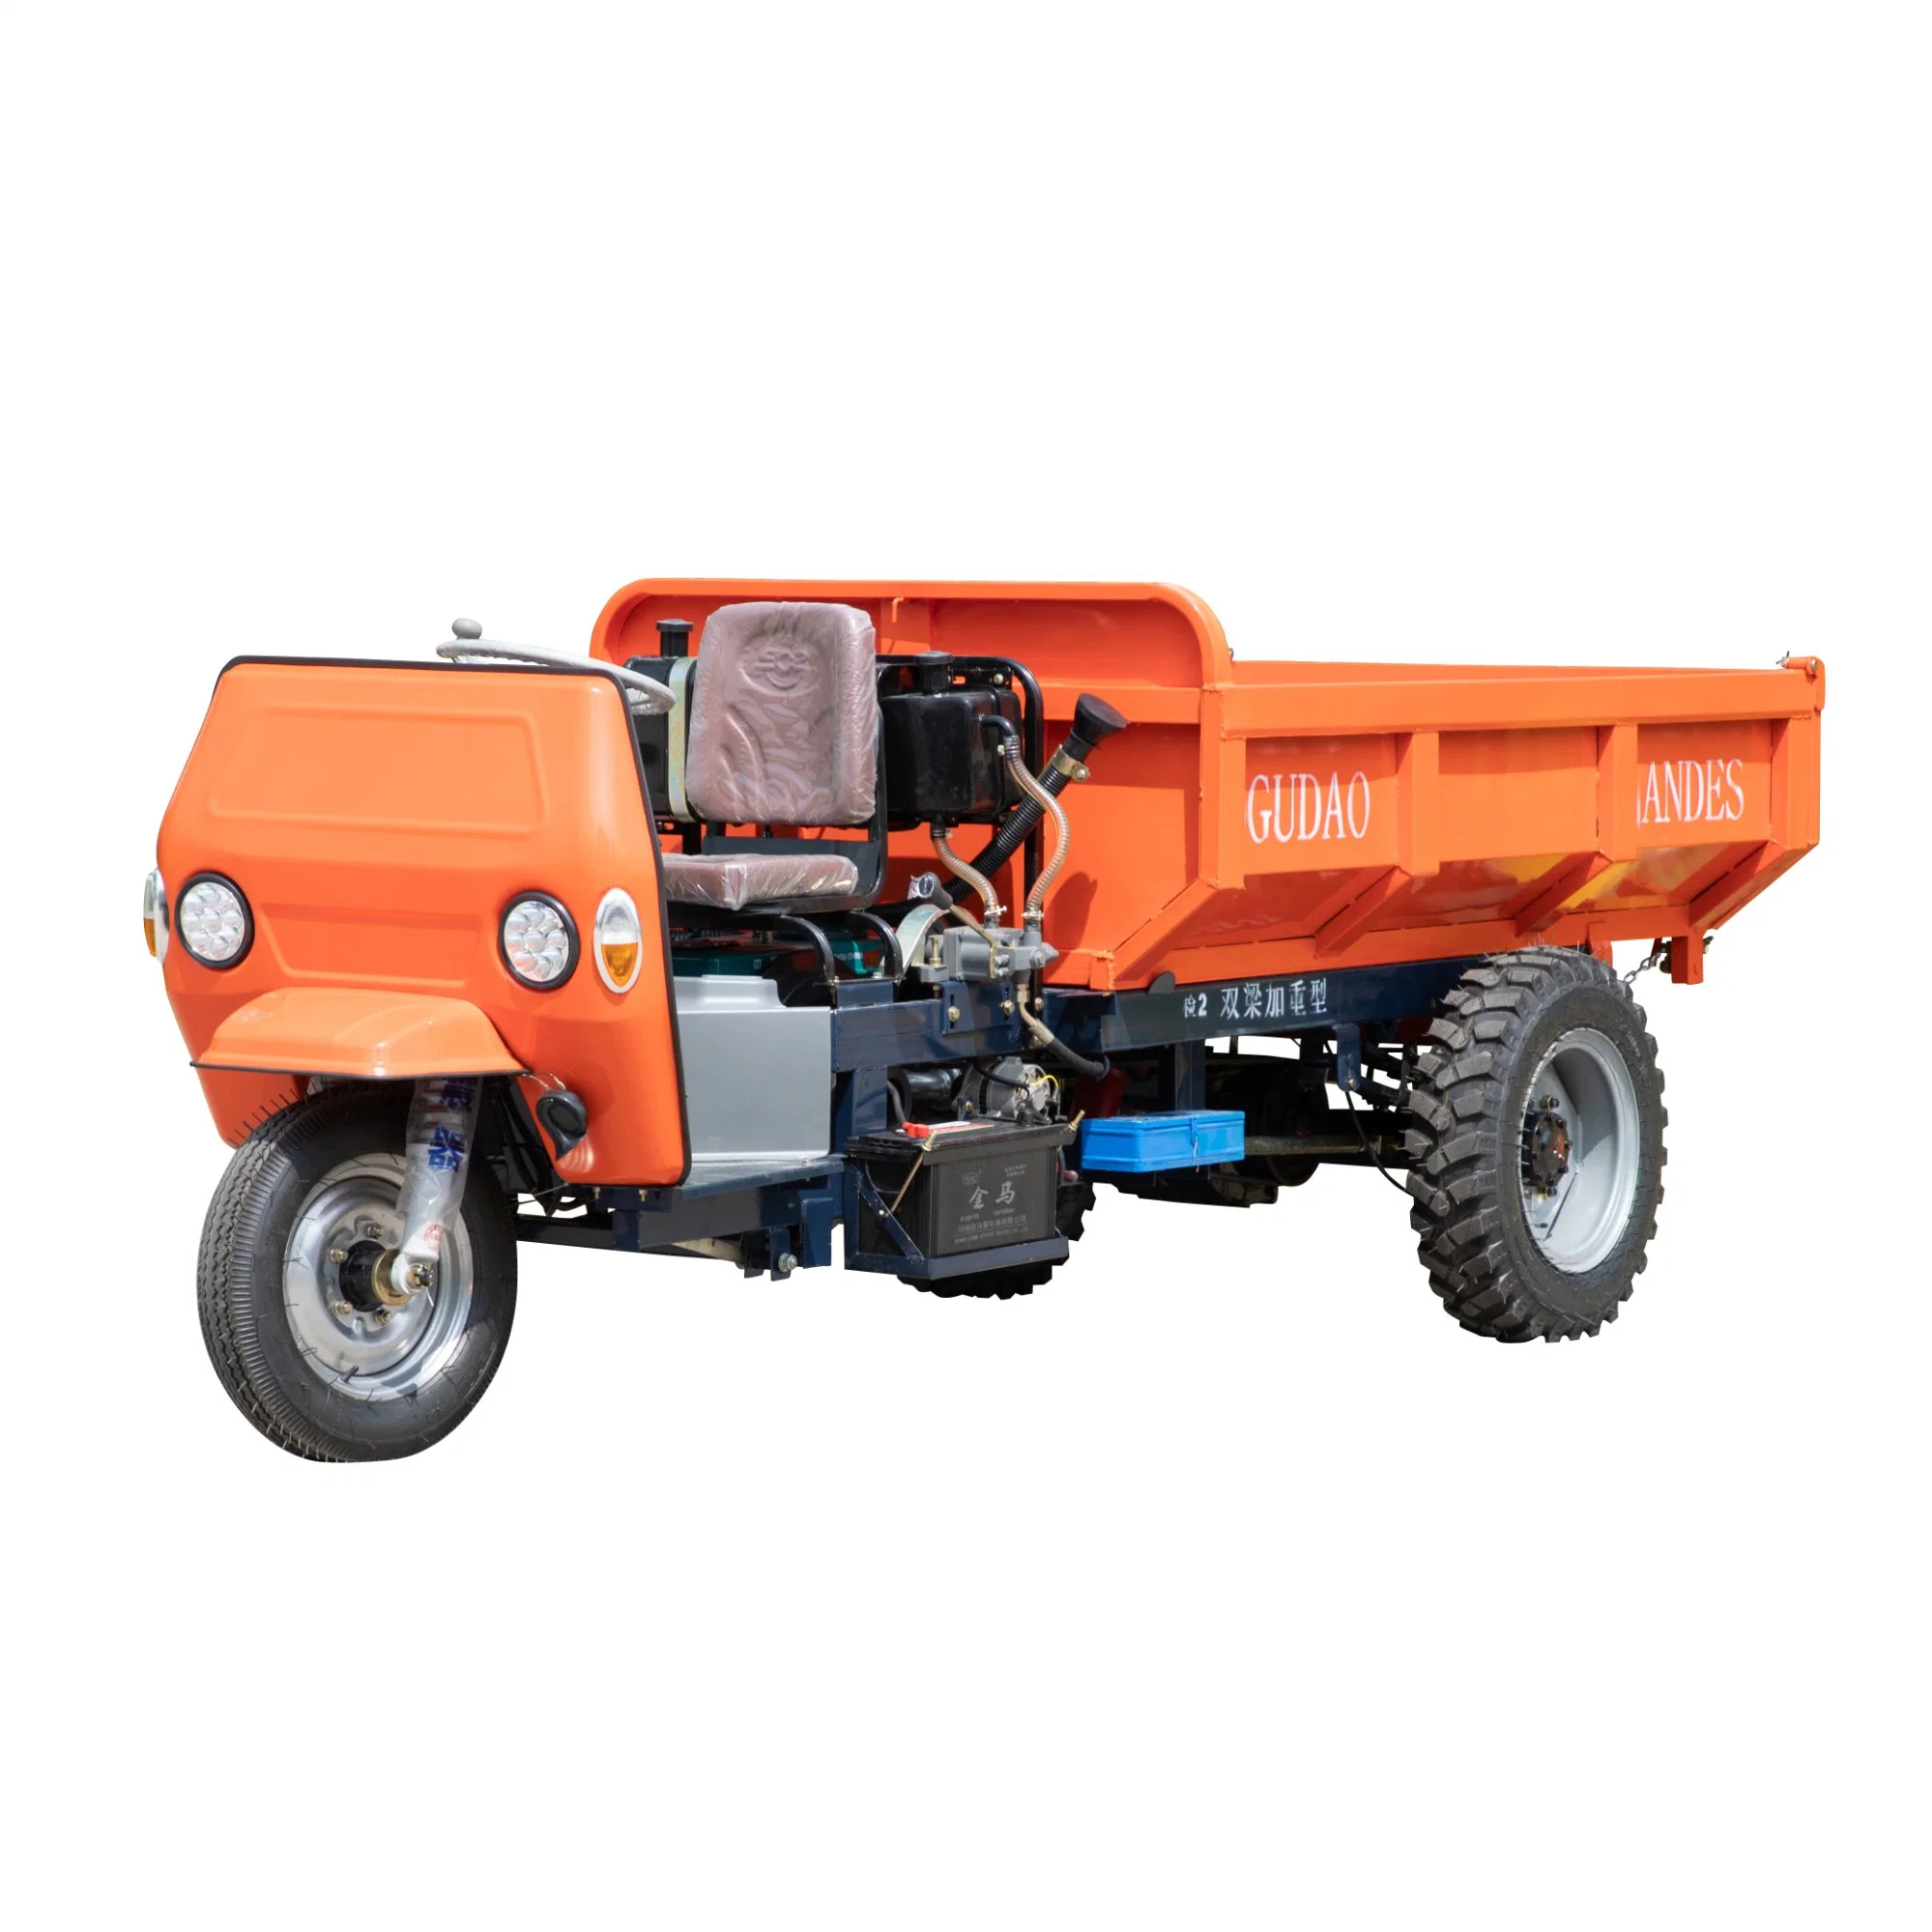 Mini Dumper" Trike мотоцикл с дизельным двигателем 2 тонны три колеса Constructiontriciclo PARA Mineria